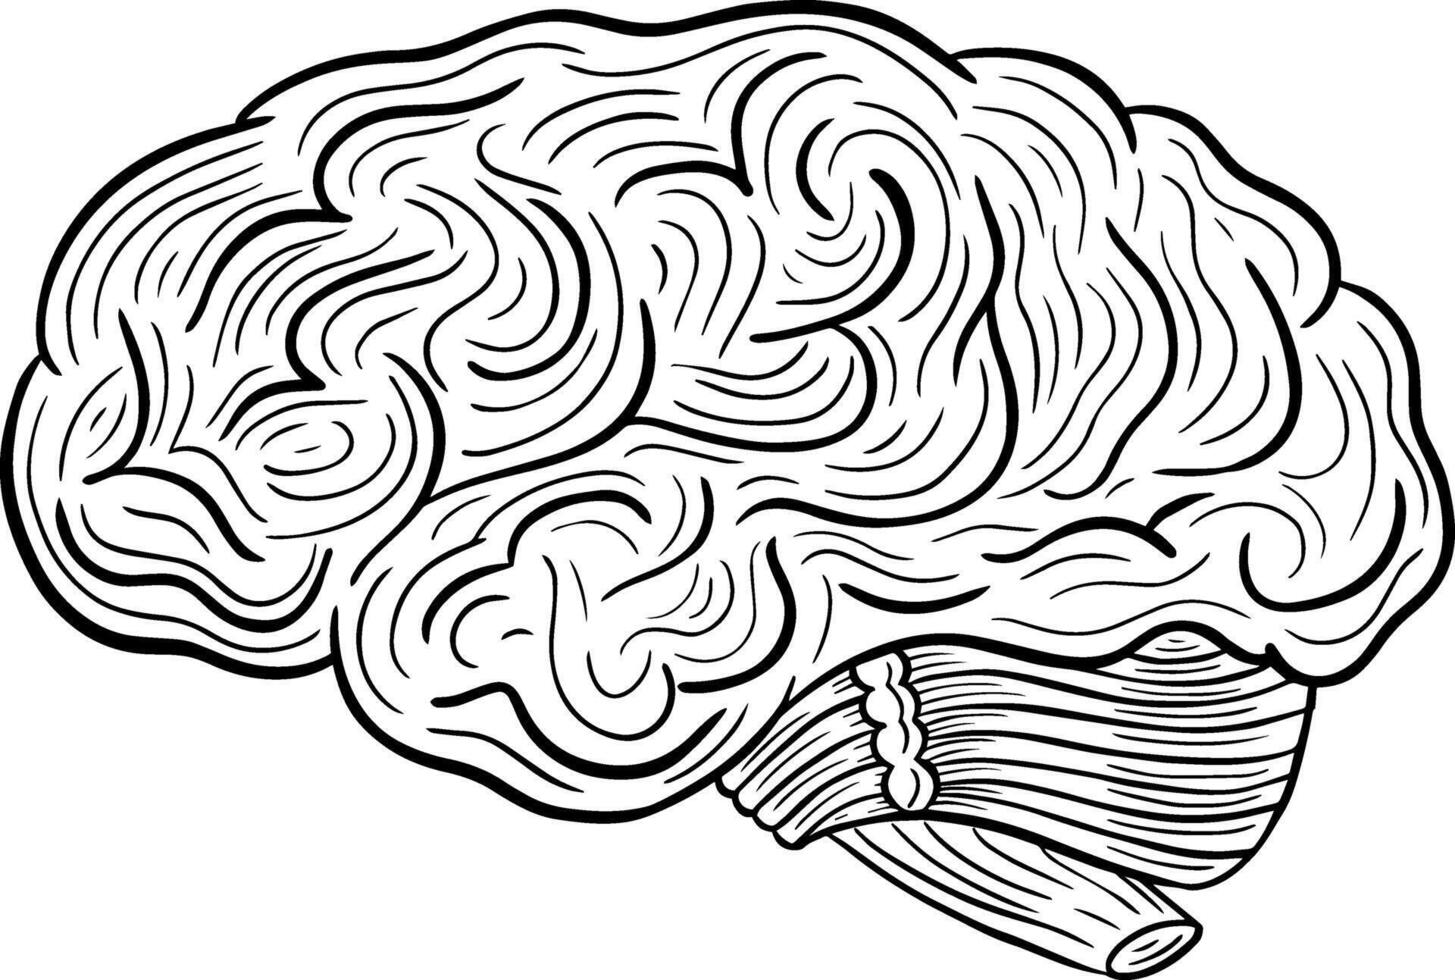 Mensch Gehirn Hand gezeichnet graviert skizzieren Zeichnung Vektor